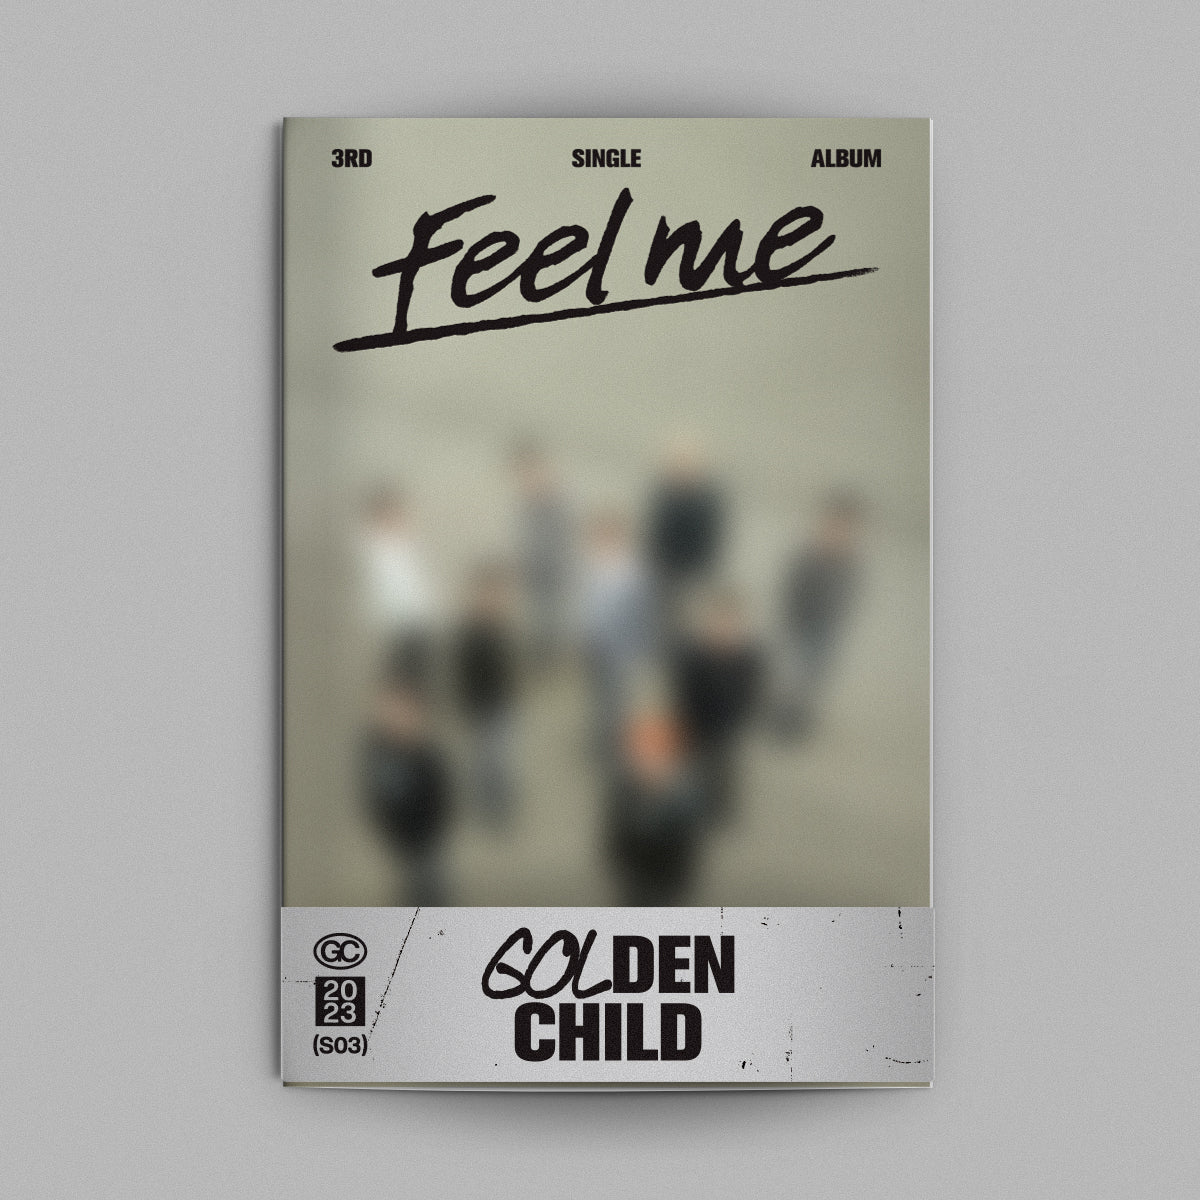 Golden Child - 3rd Single Album Feel me